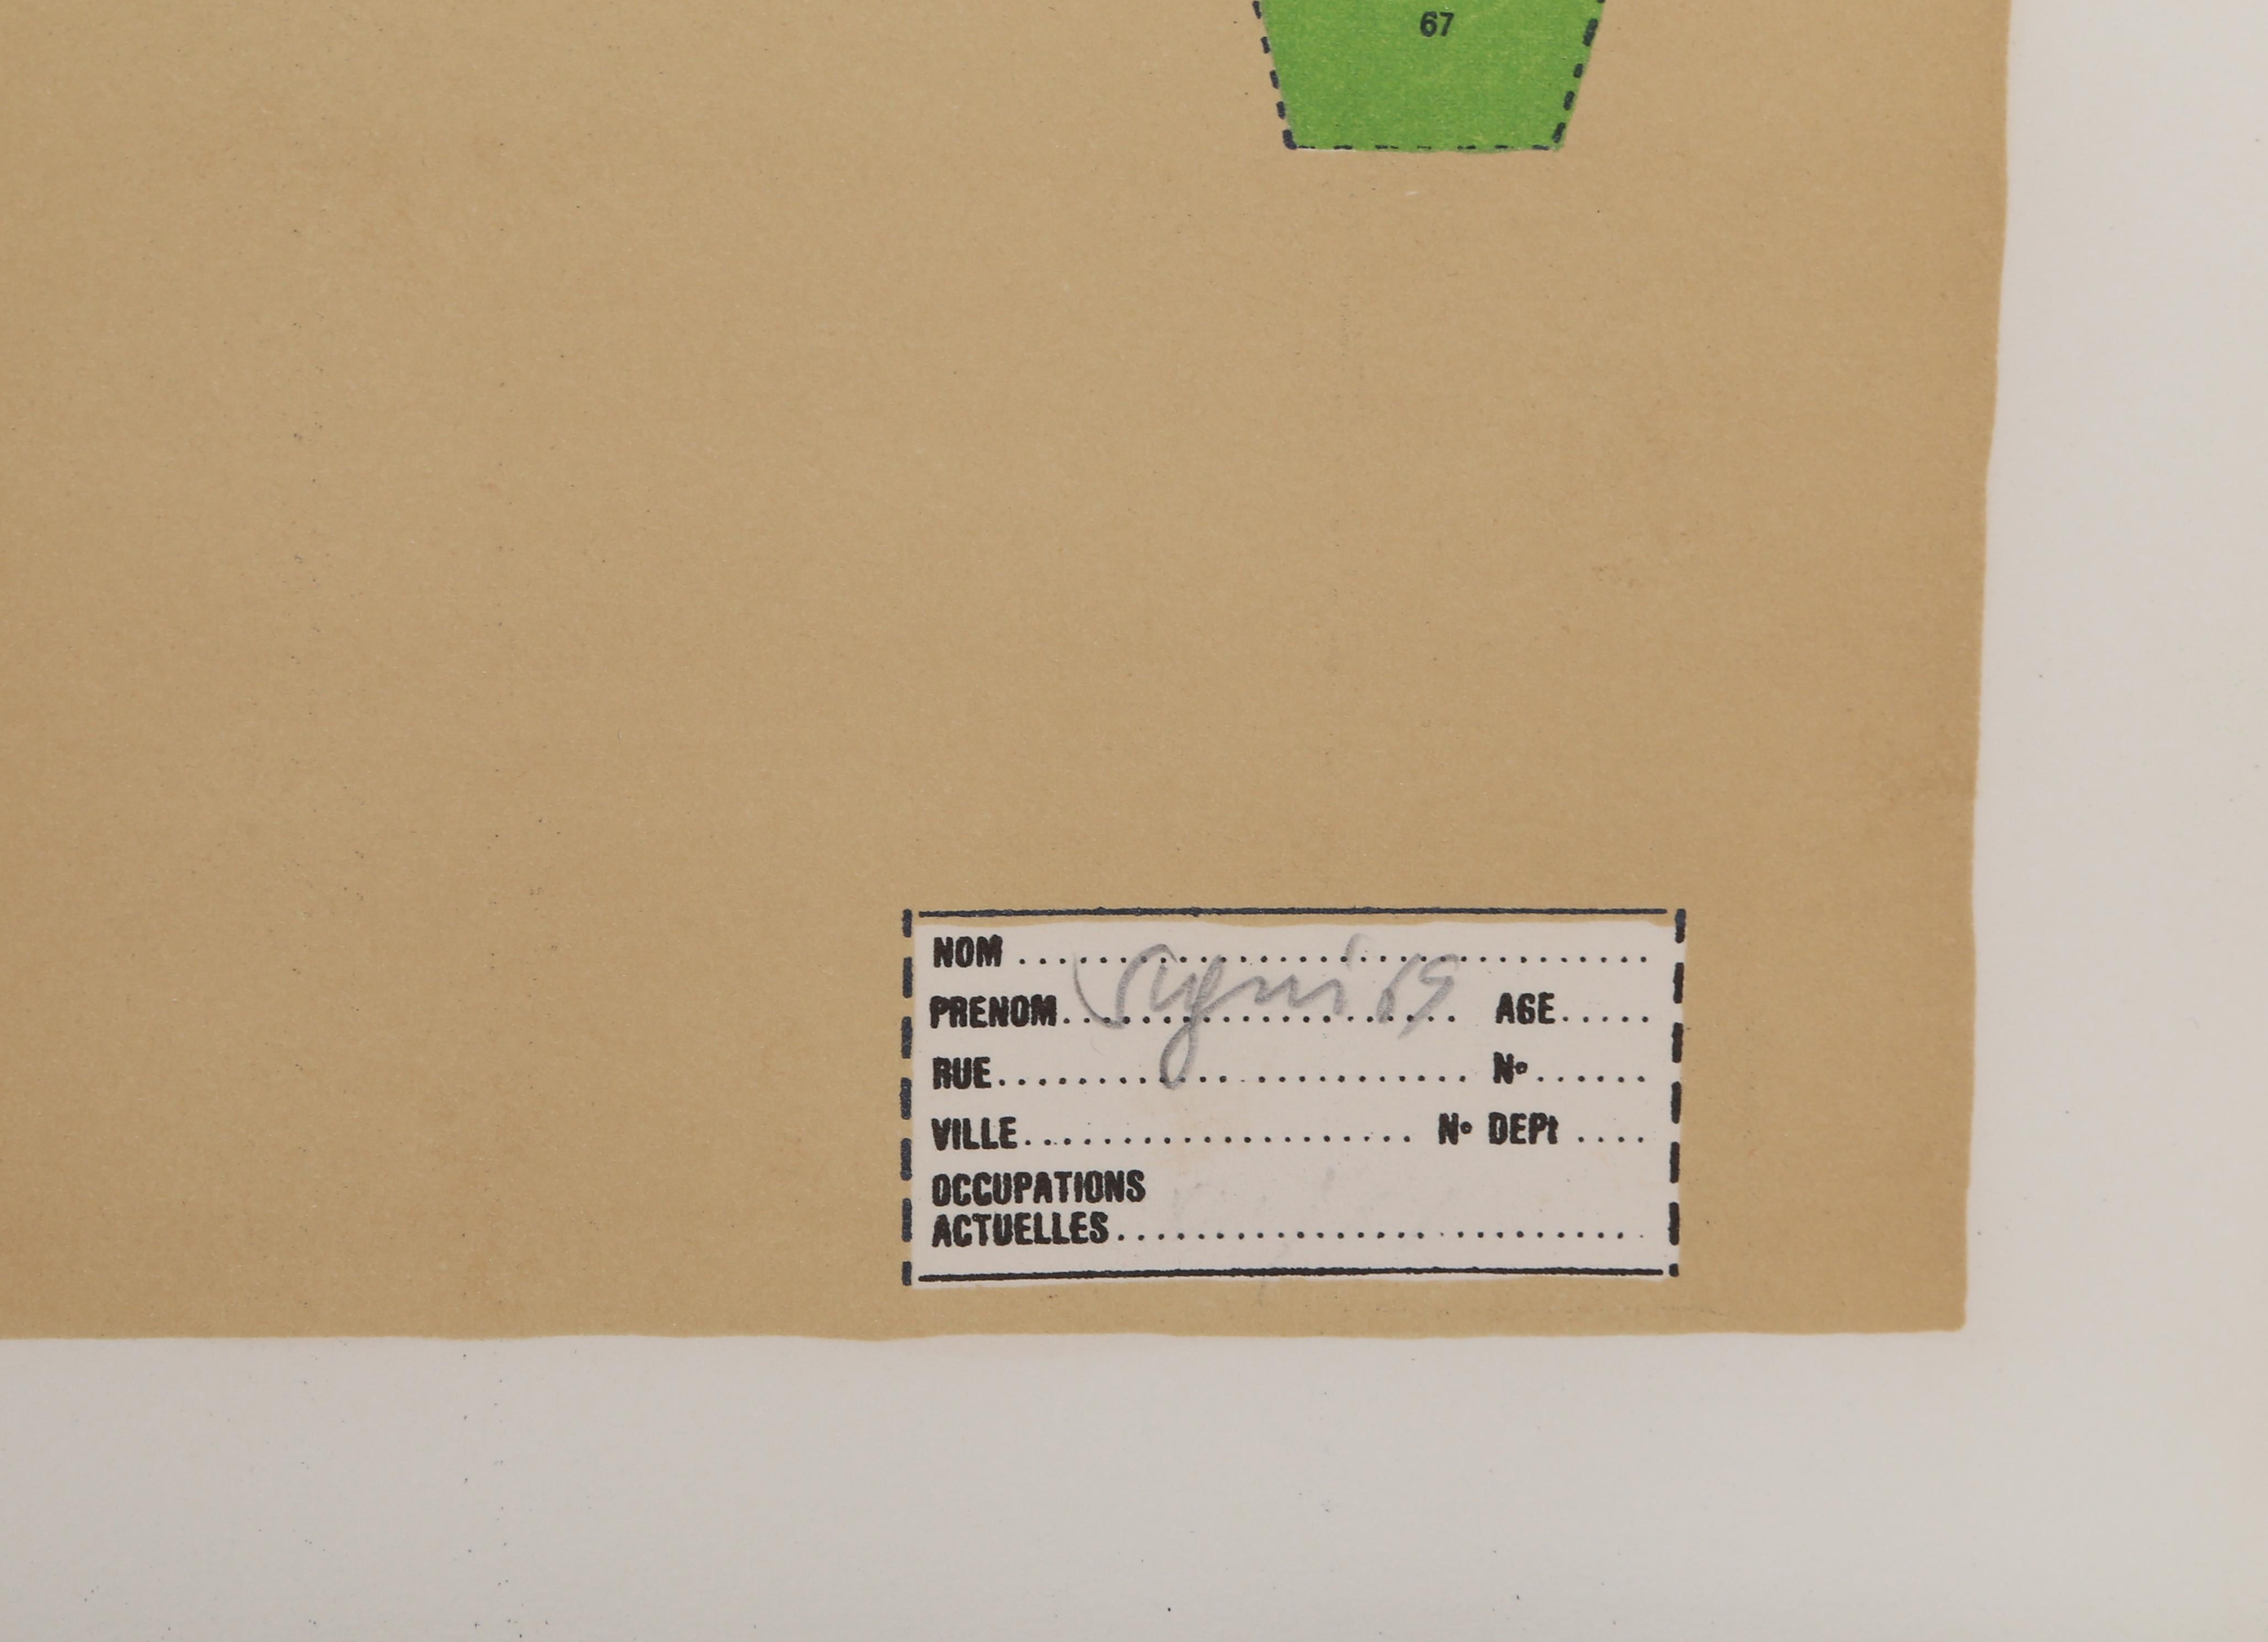 Artistics : Antonio Segui, Argentin (1934 - )
Titre :	Manhattan aux Enzymes
Année : 1970
Moyen :	Sérigraphie, signée et numérotée au crayon
Edition : 100
Taille : 22 x 30 pouces (55.88 x 76.2 cm)